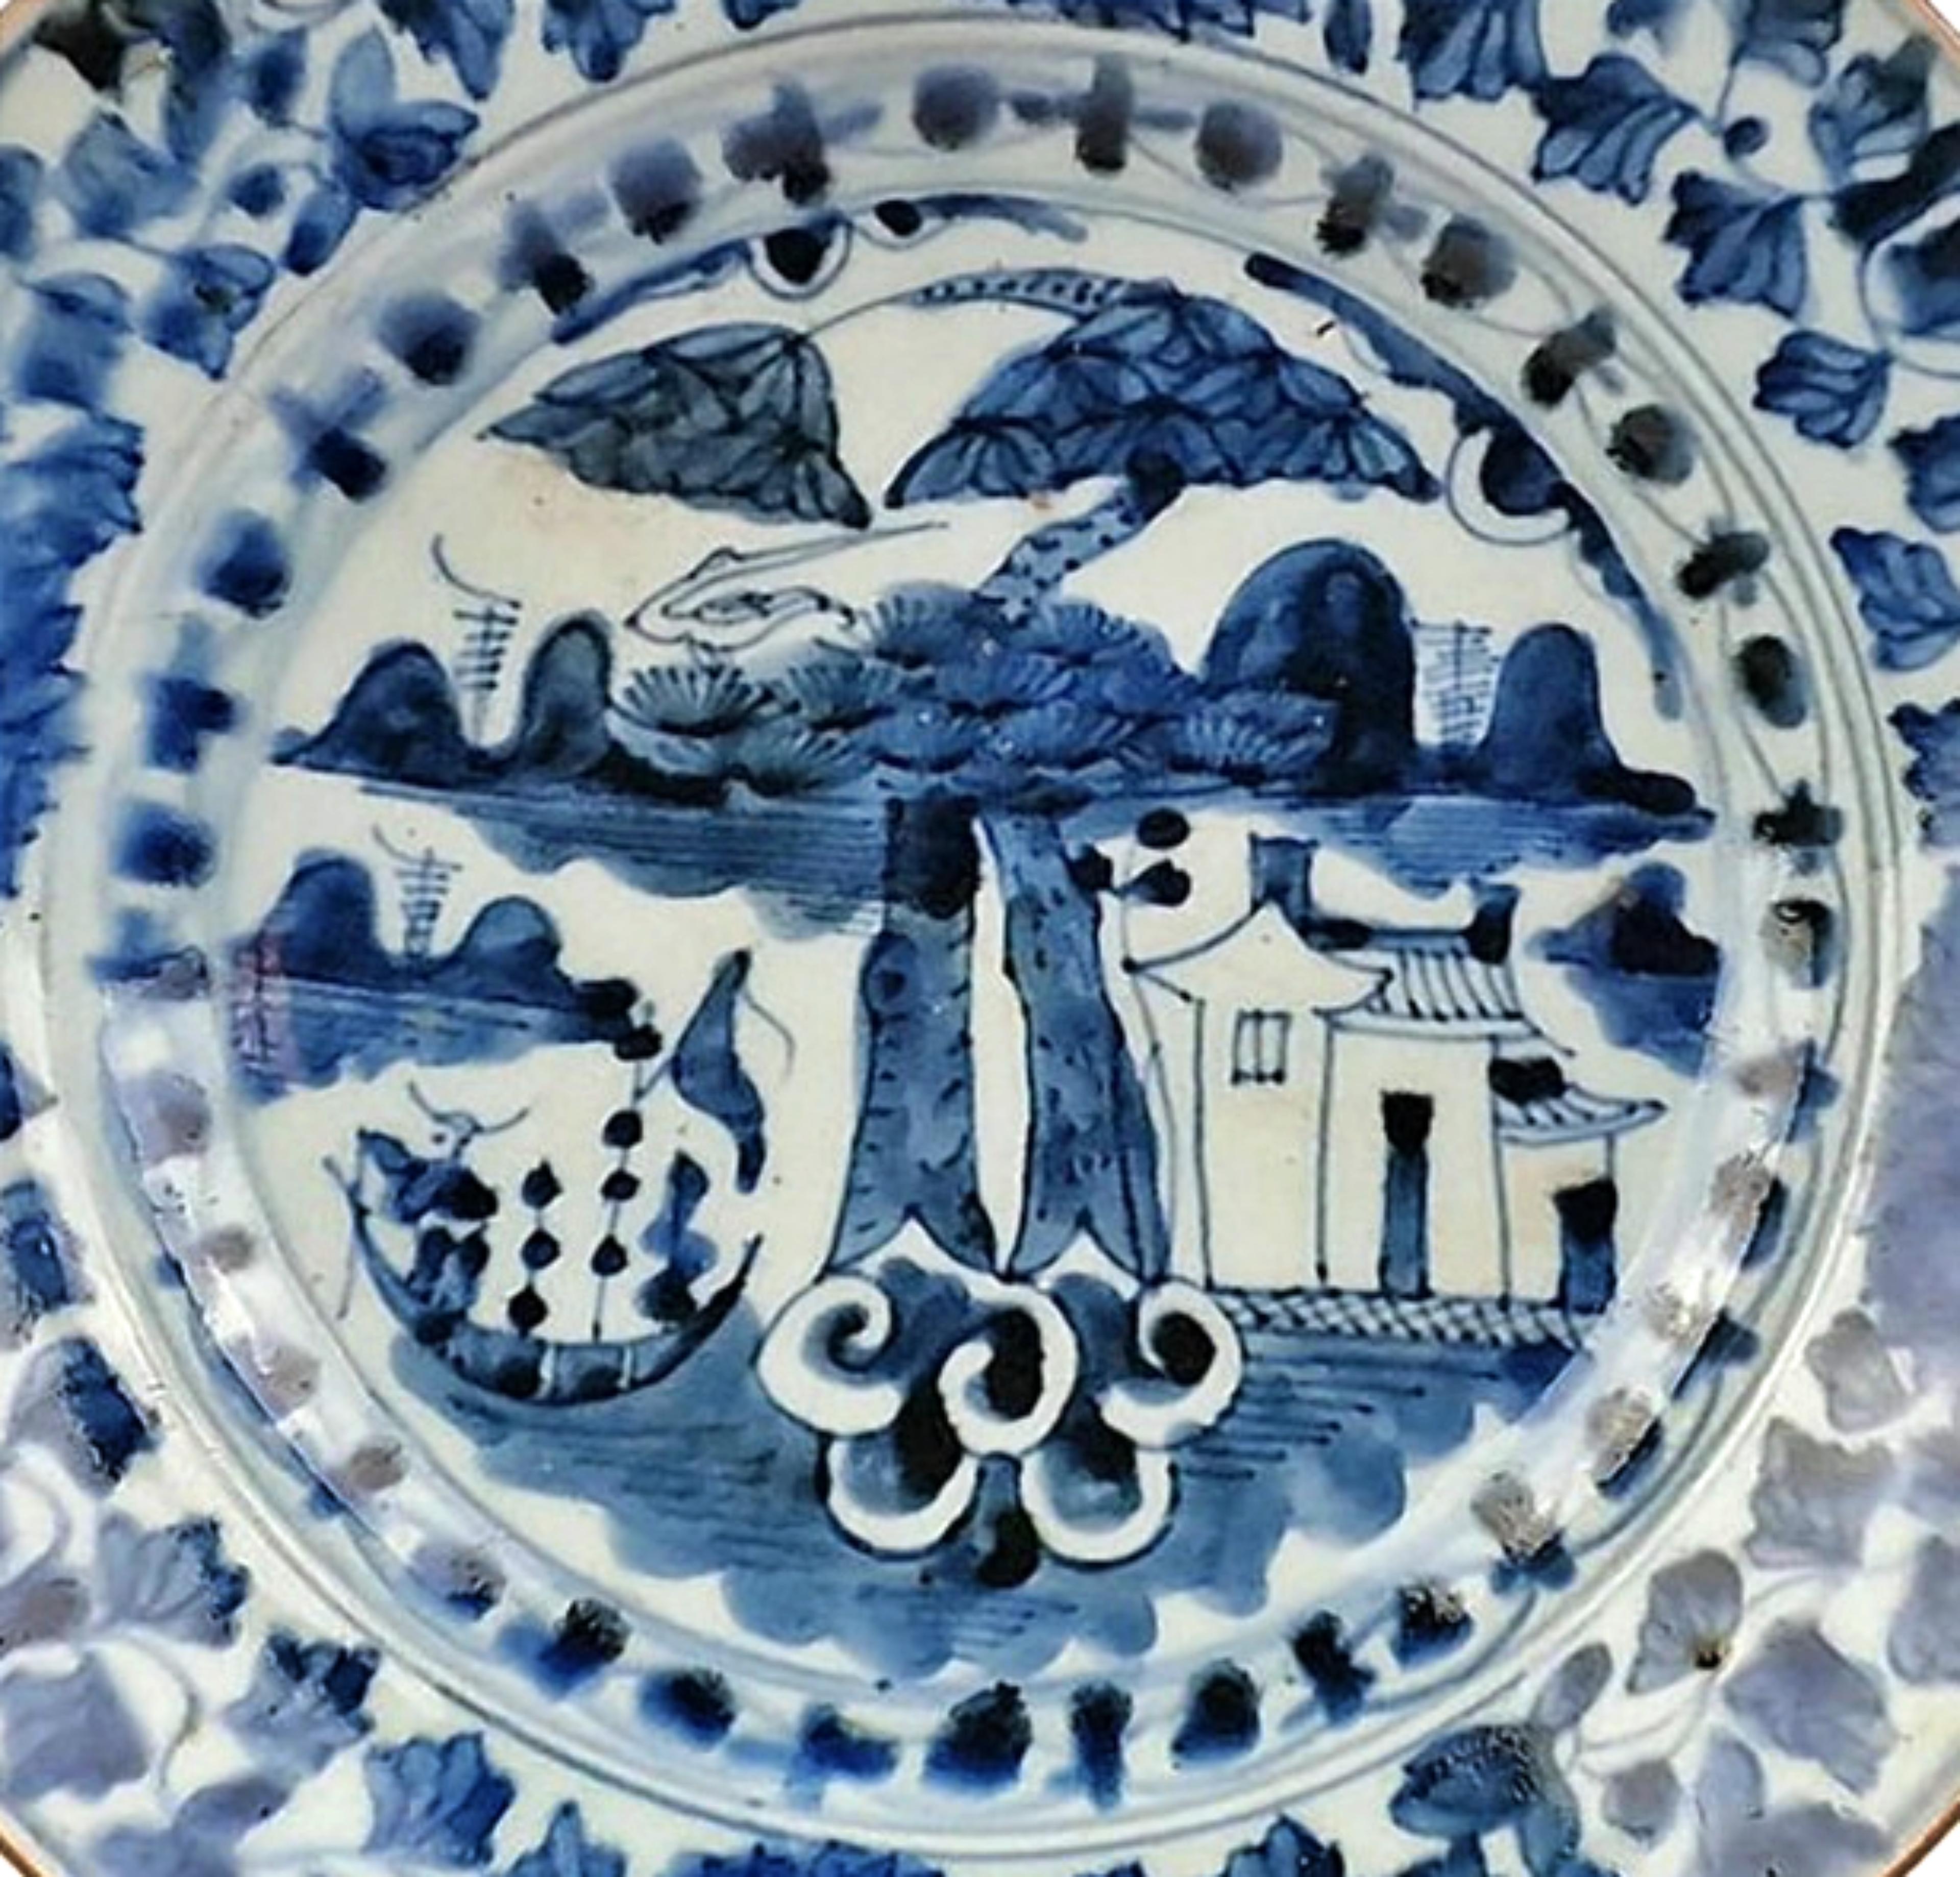 CHINA 17. CENTURY Schöner Wanli-Teller aus Wanli
Aus weiß-blauem Porzellan mit einer Seelandschaft mit Boot und Fischerhäuschen. 
Markierung unter dem Sockel.
Abmessungen: T. 23,2cm
guter Zustand